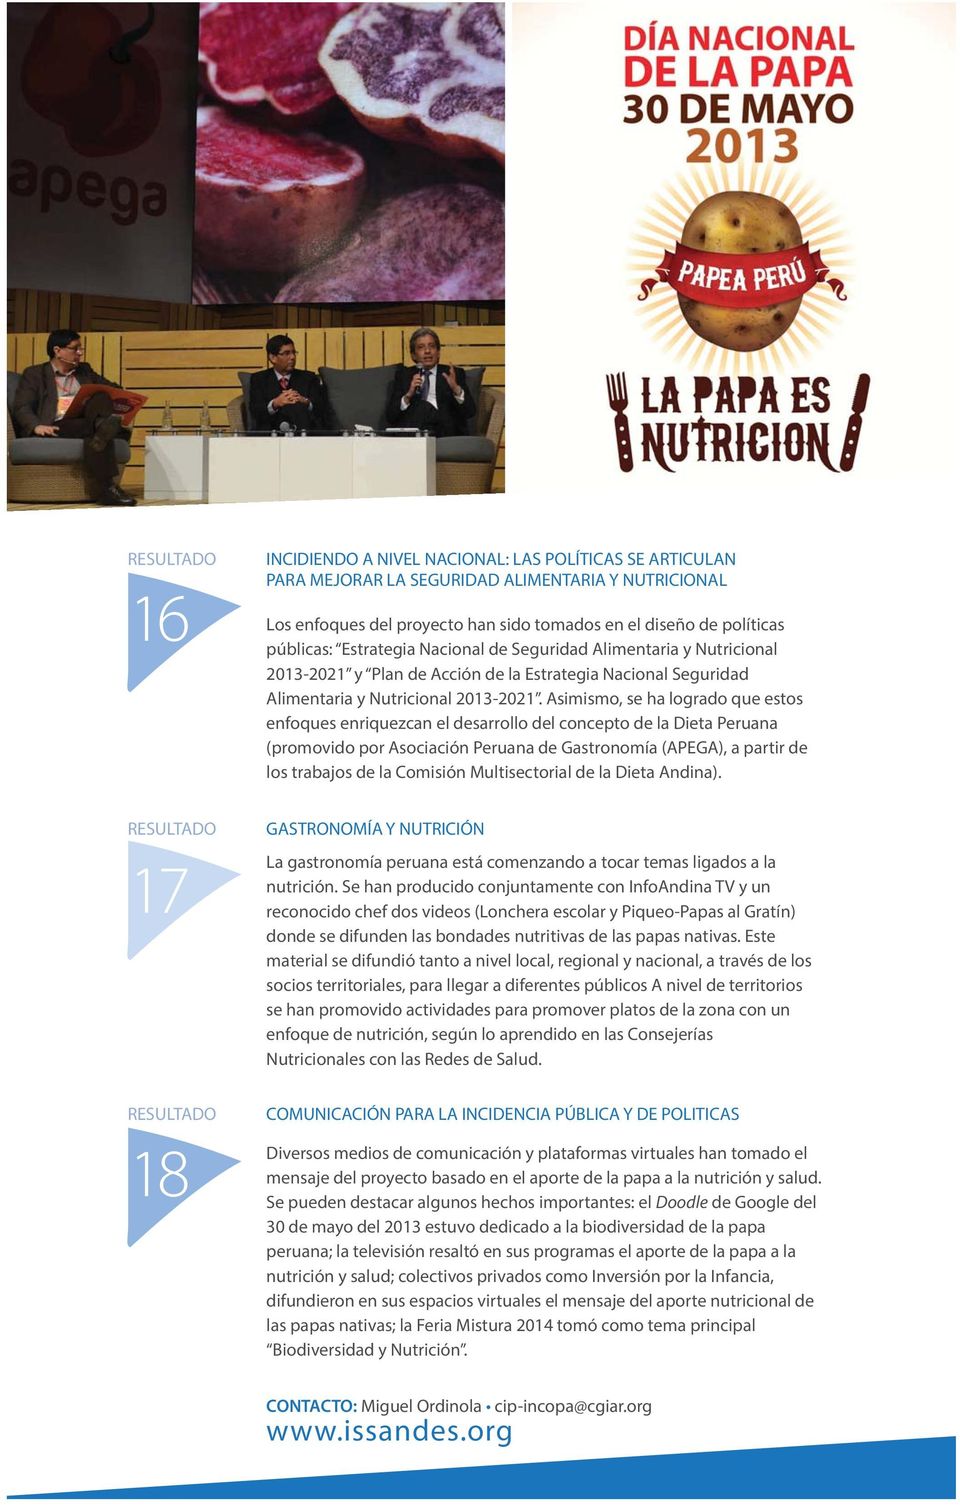 Asimismo, se ha logrado que estos enfoques enriquezcan el desarrollo del concepto de la Dieta Peruana (promovido por Asociación Peruana de Gastronomía (APEGA), a partir de los trabajos de la Comisión